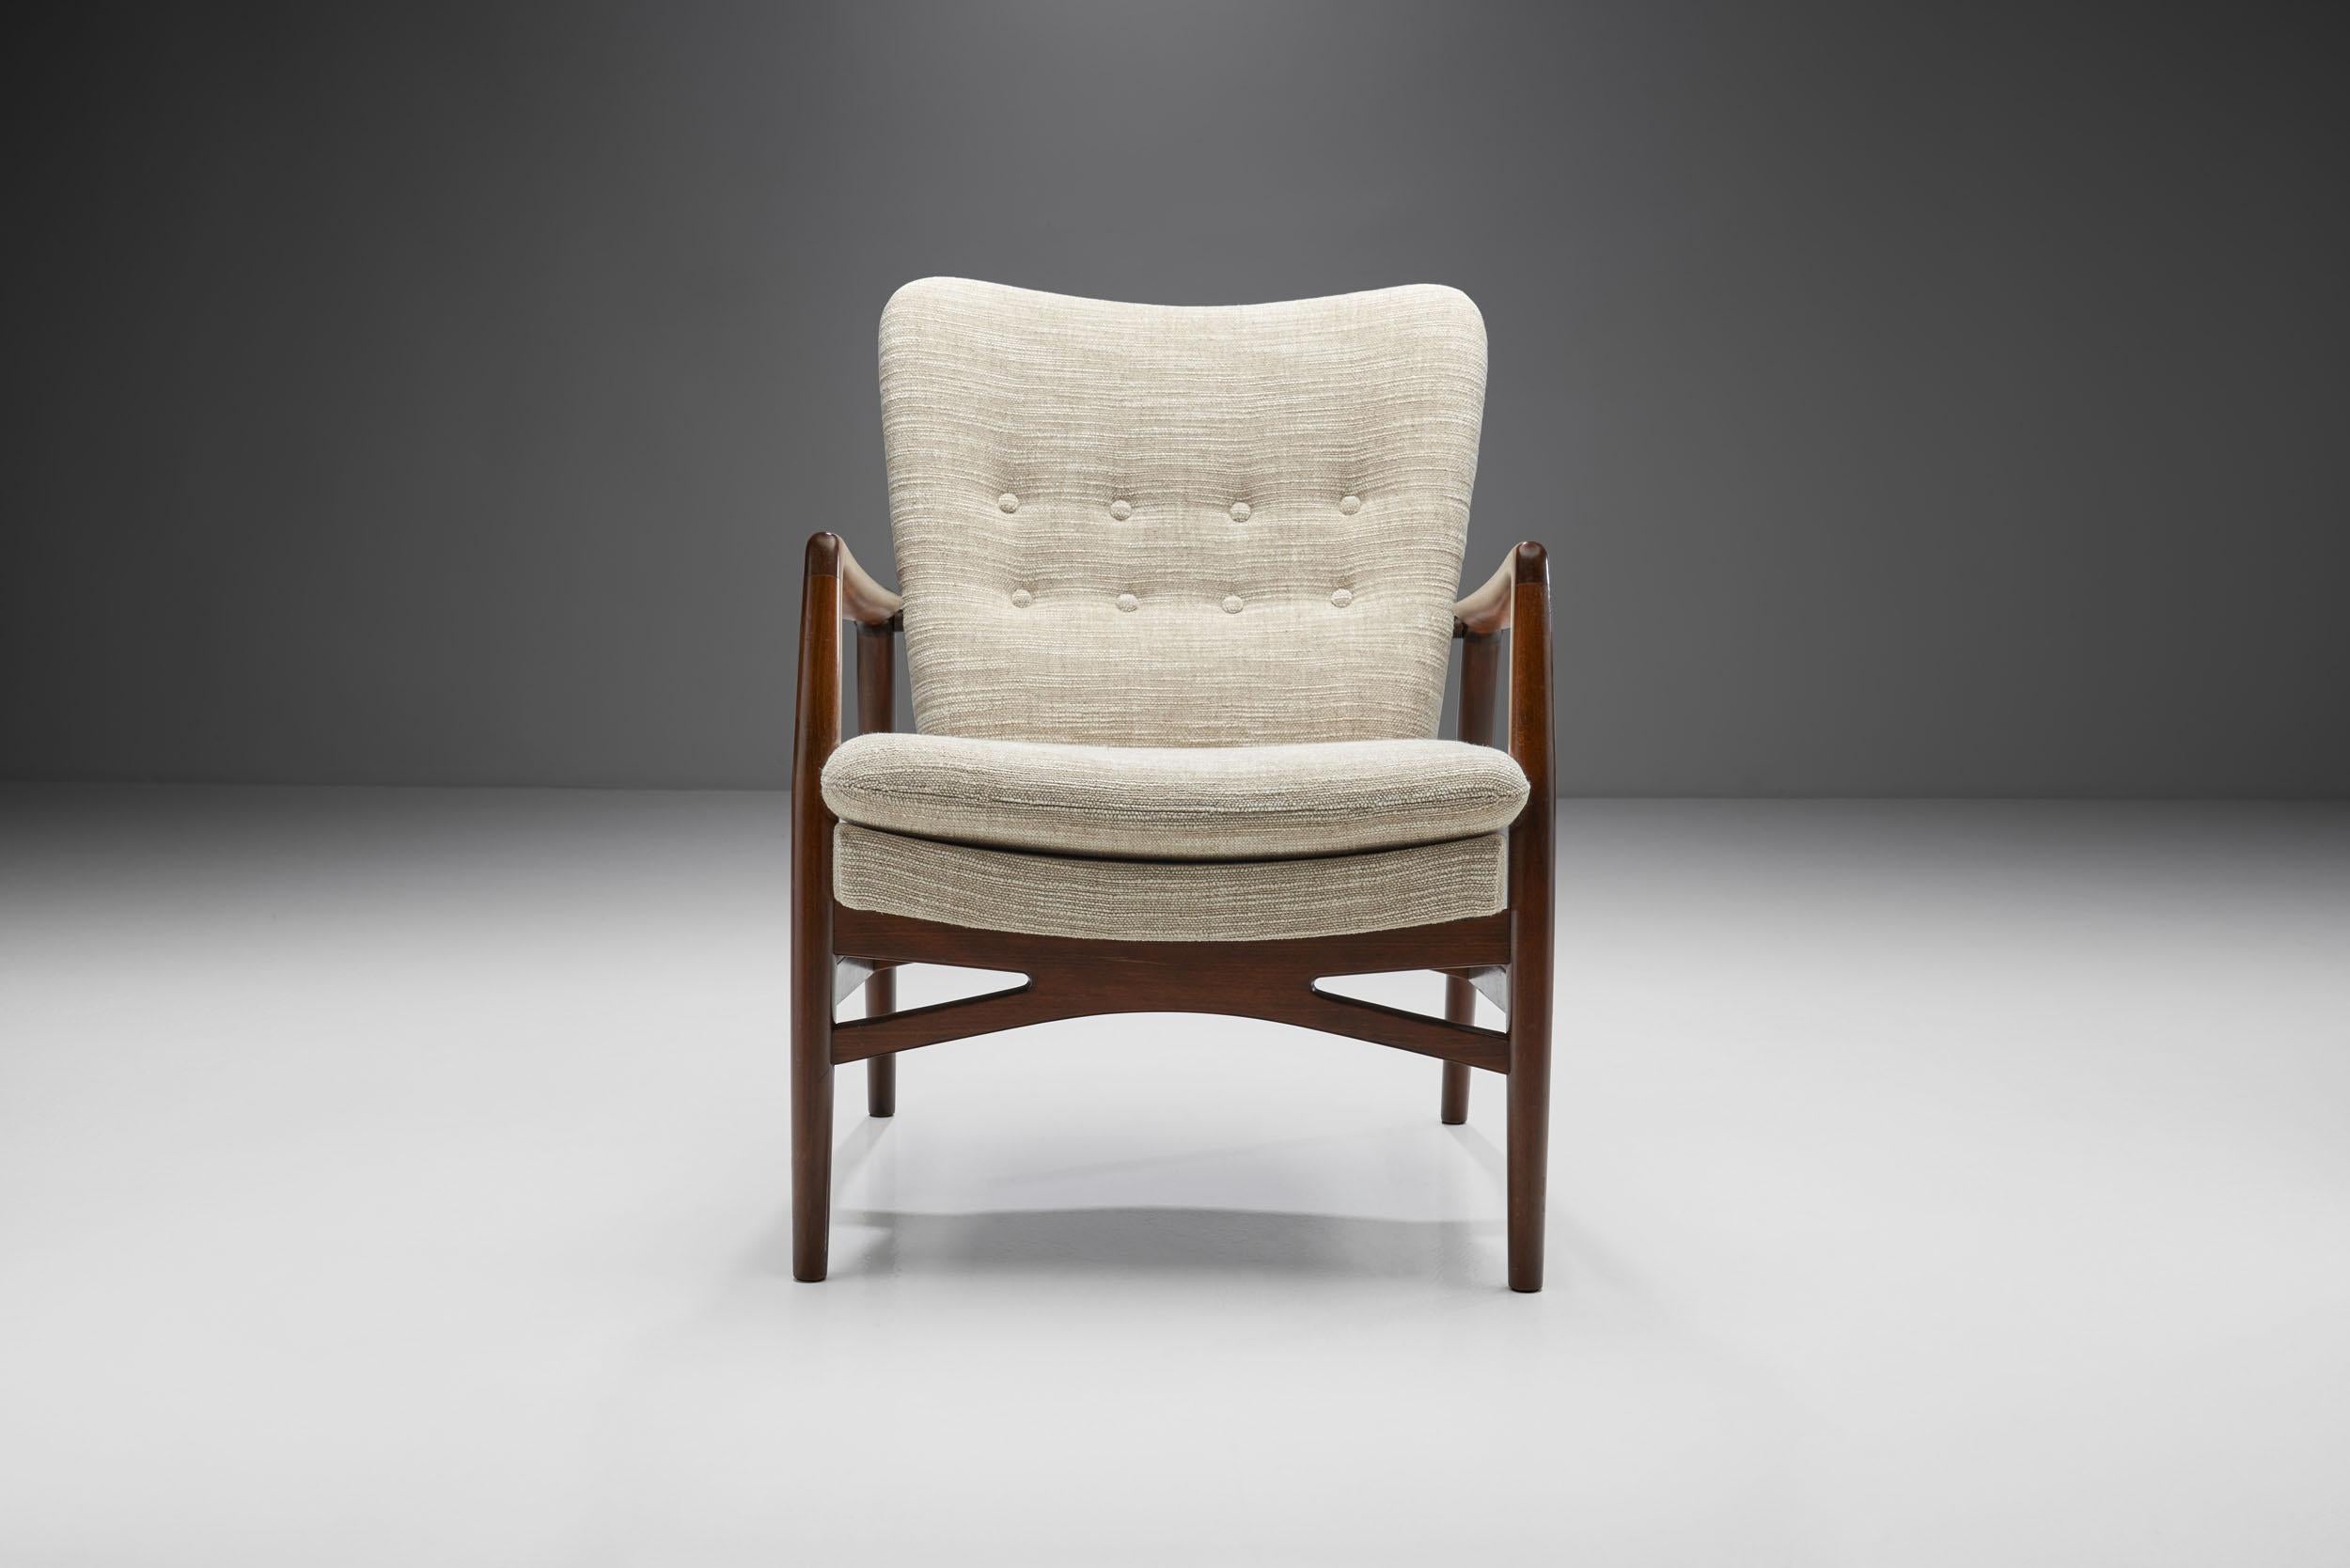 Wood Kurt Olsen “Model 215” Easy Chair for Slagelse Møbelværk, Denmark 1954 For Sale